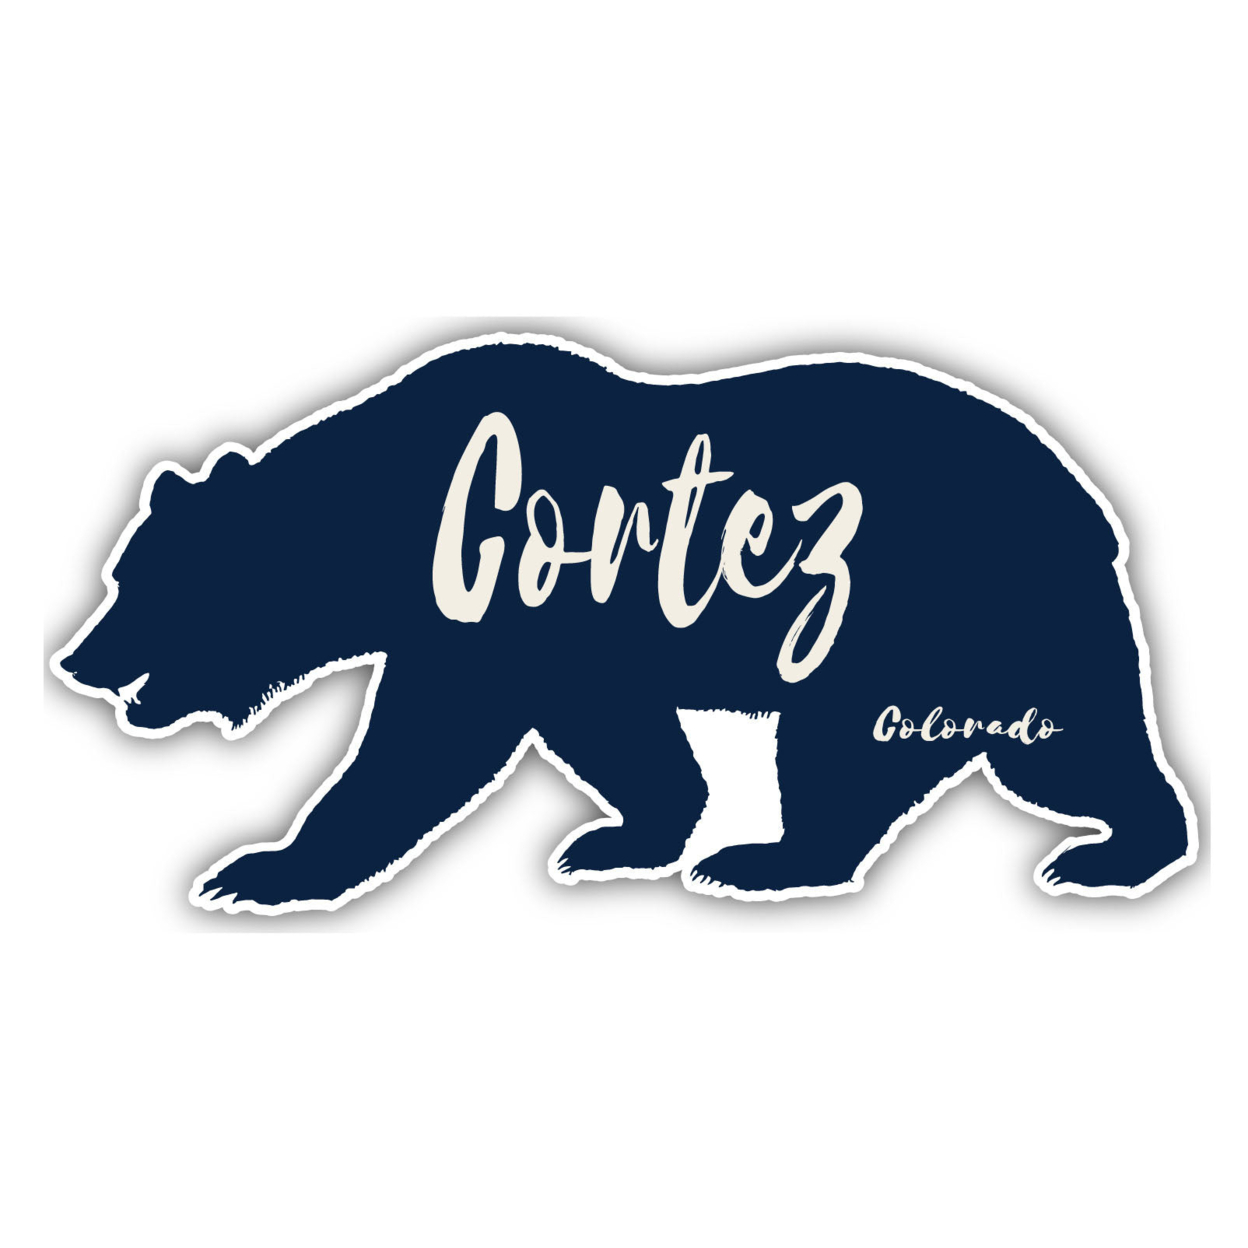 Cortez Colorado Souvenir Decorative Stickers (Choose Theme And Size) - Single Unit, 8-Inch, Tent